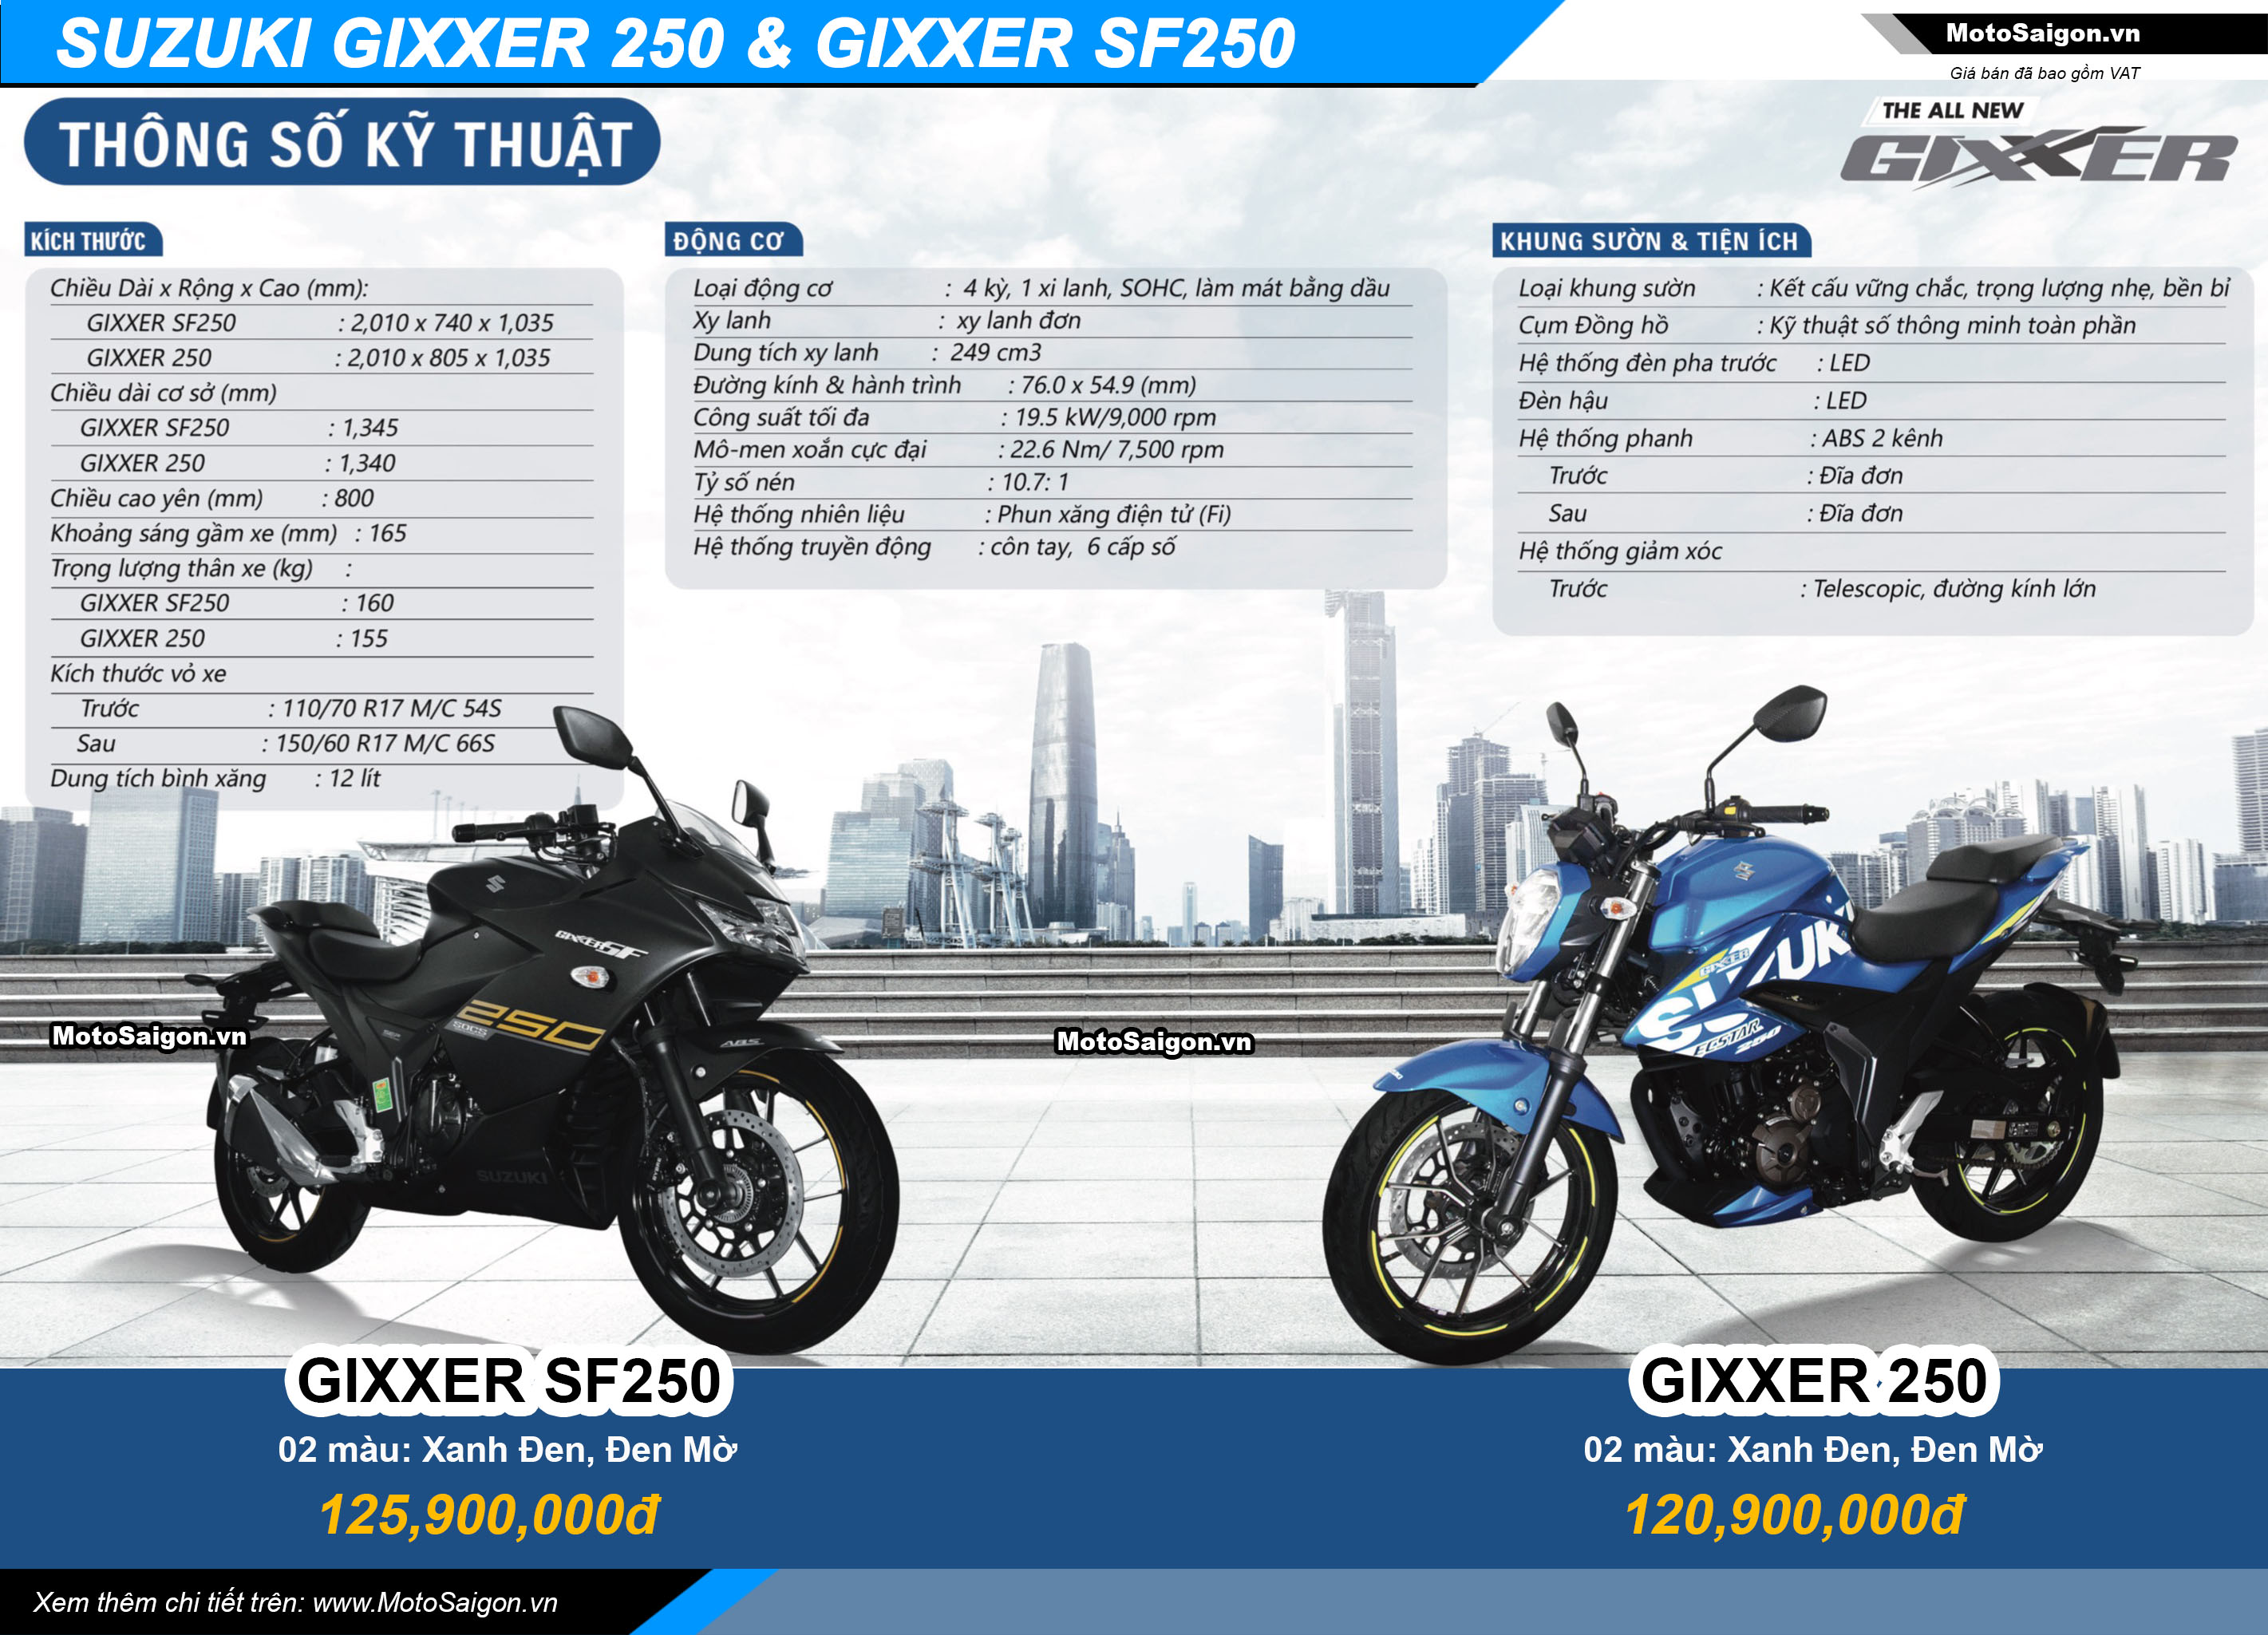 Suzuki Gixxer 250 - Suzuki Gixxer SF250 hình ảnh thông số kỹ thuật giá bán